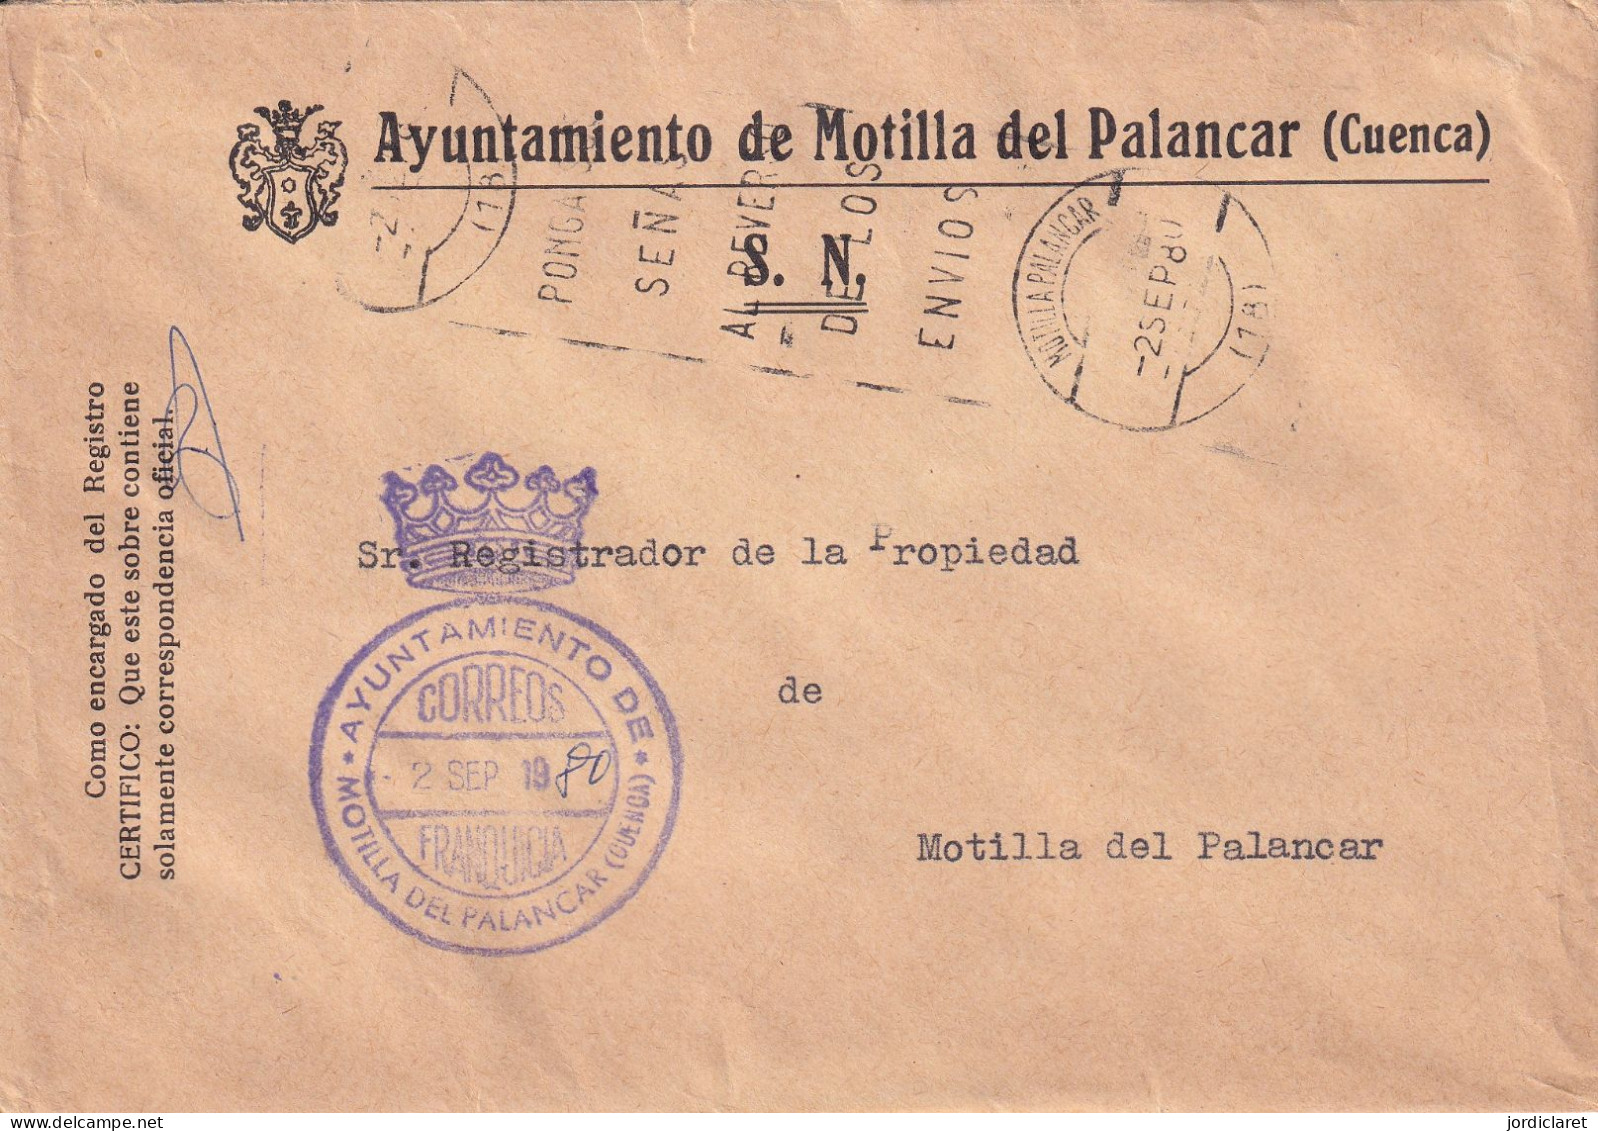 AYUNTAMIENTO  1980  MONTILLA DEL PALANCAR  CUENCA - Franquicia Postal